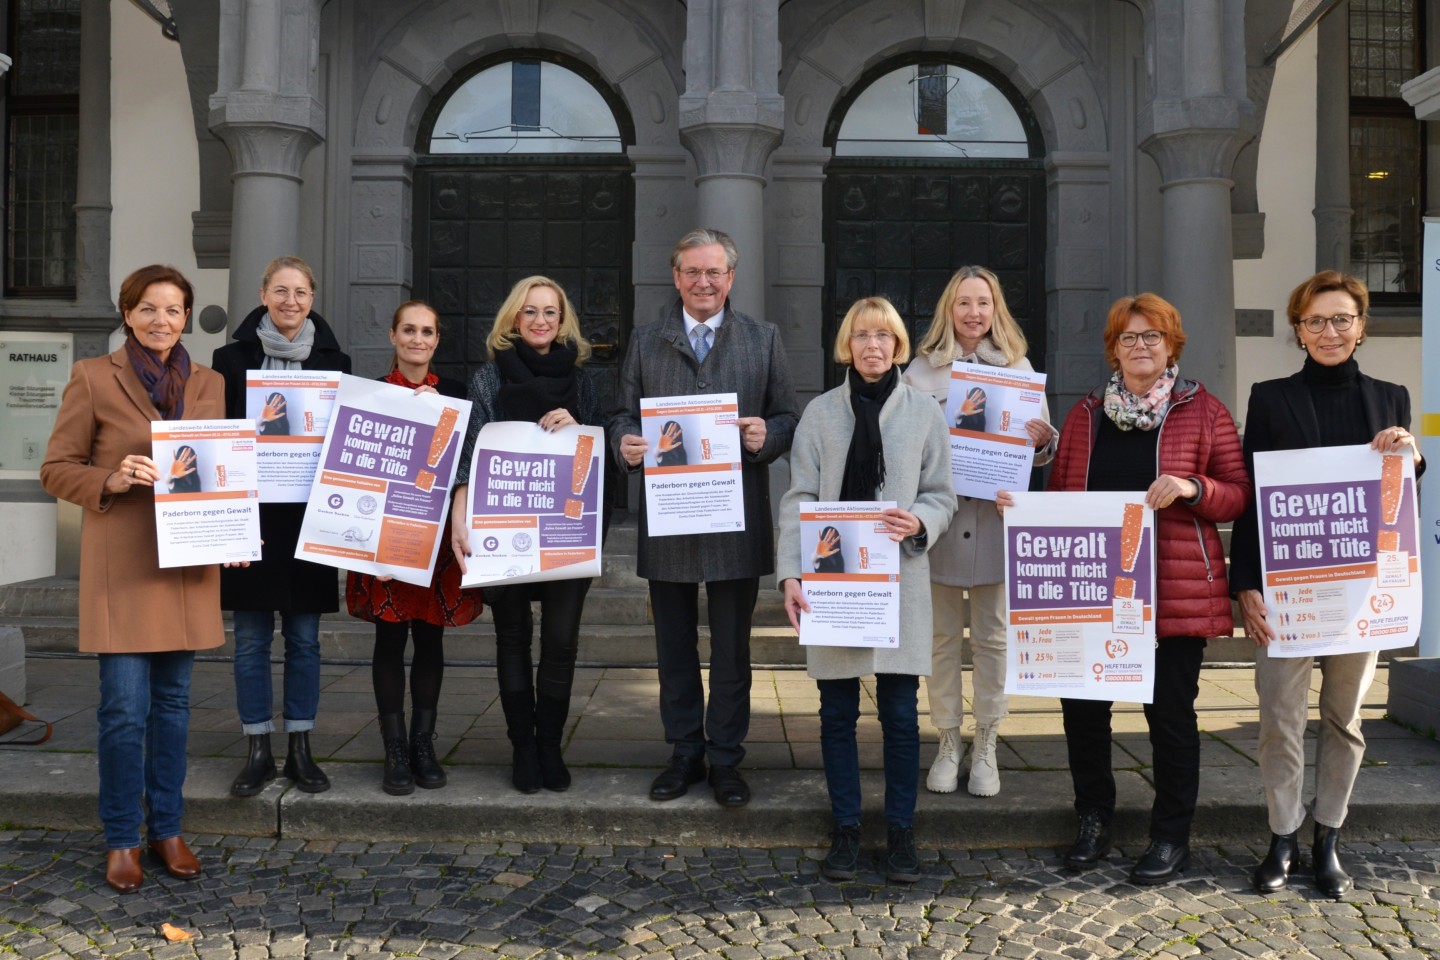 Die Gleichstellungsstelle der Stadt Paderborn hat die diesjährige landesweite Aktionswoche gegen Gewalt an Frauen zum Anlass genommen, mit zahlreichen Akteurinnen ein breit aufgestelltes Bündnis gegen